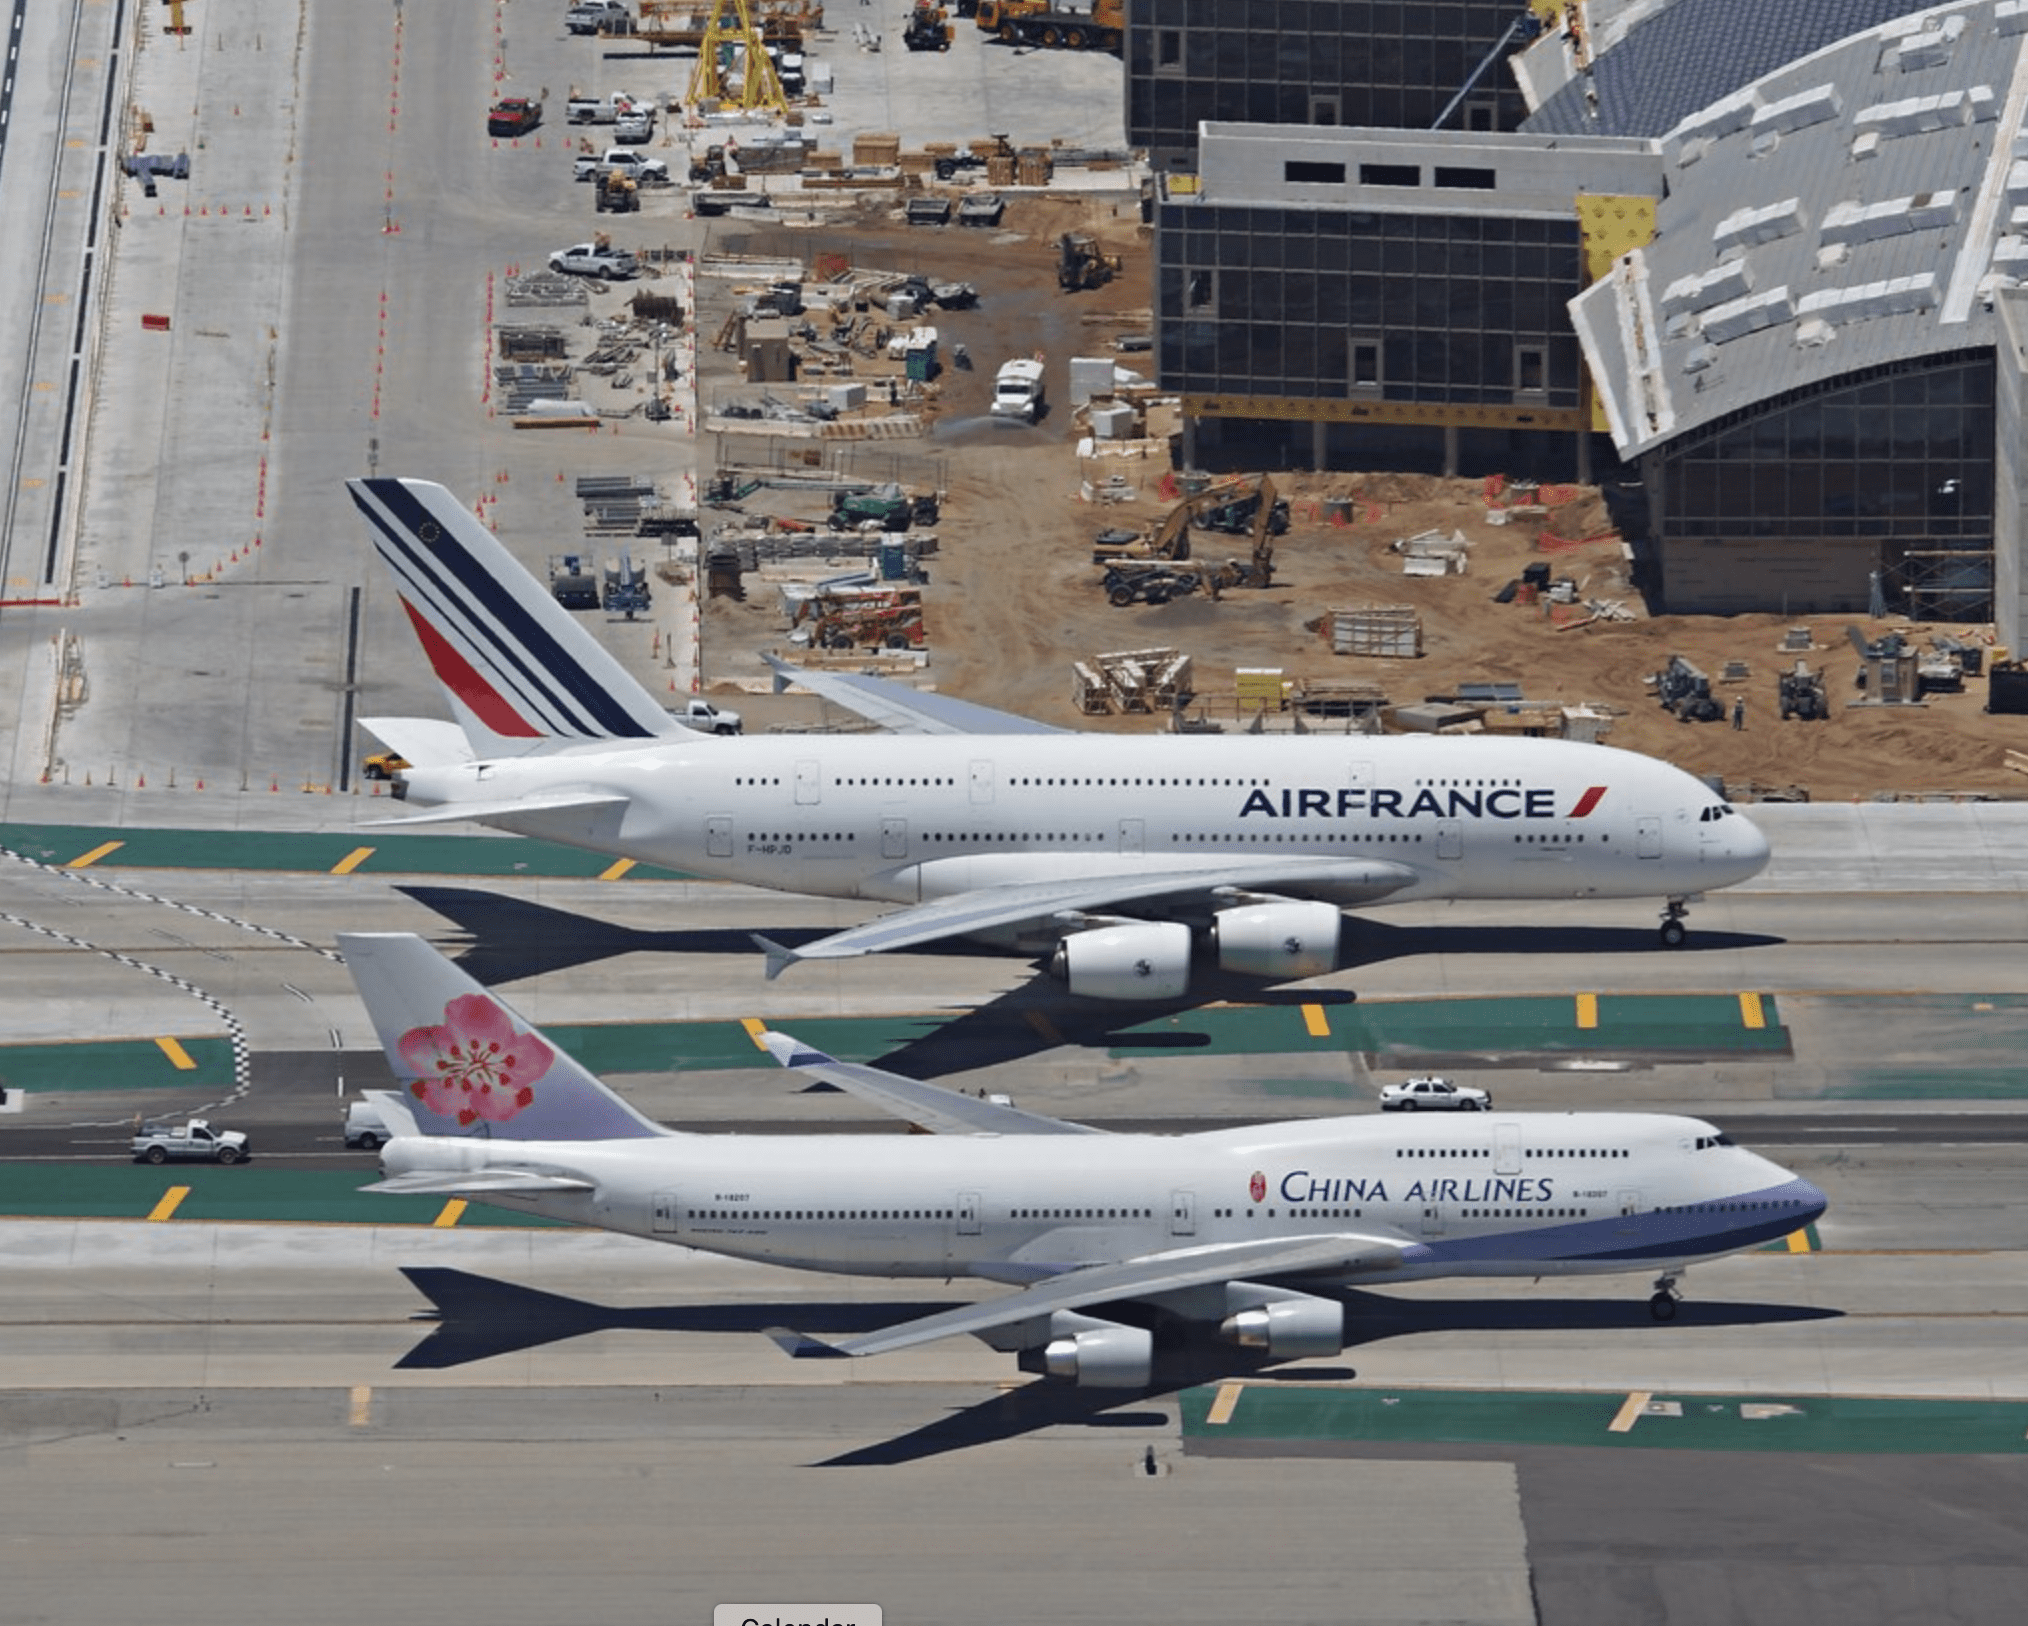 So sánh kích thước giữa Boeing 747-400 của China Airlines và Airbus A380-800 của Air France. Ảnh: Kai Hansen/Flickr